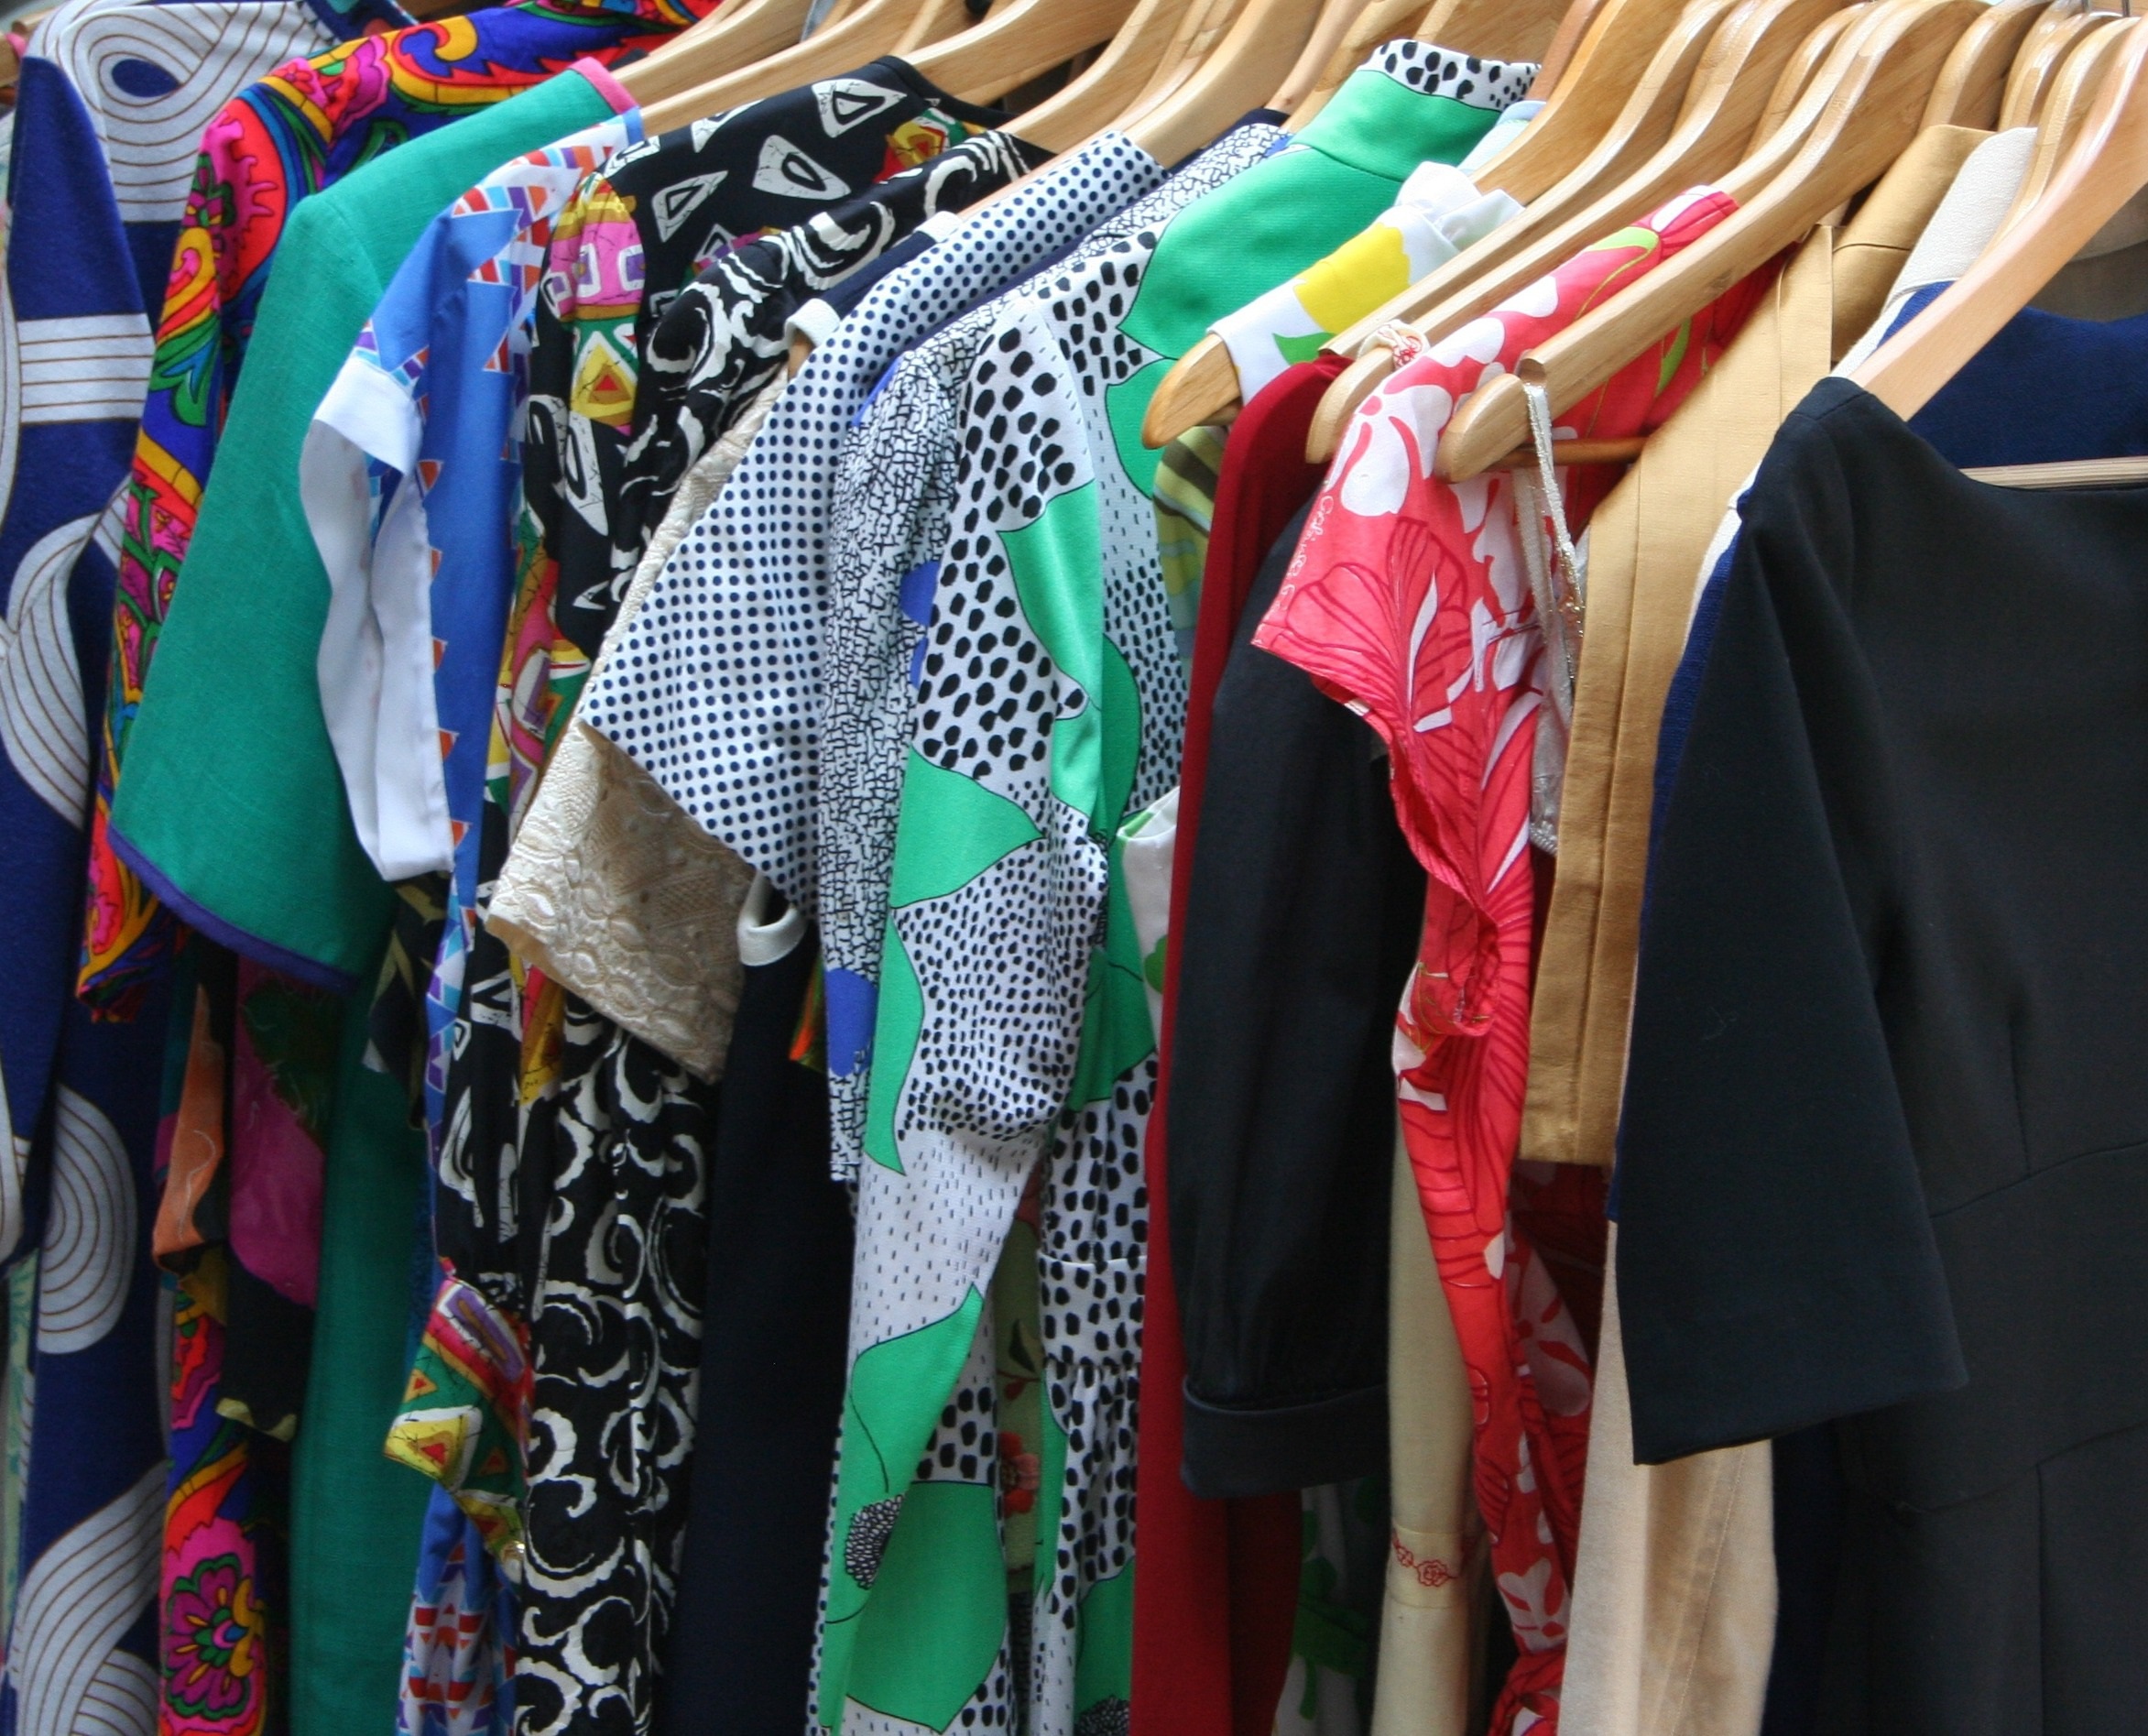 Por qué las tiendas de ropa están eliminando los probadores?